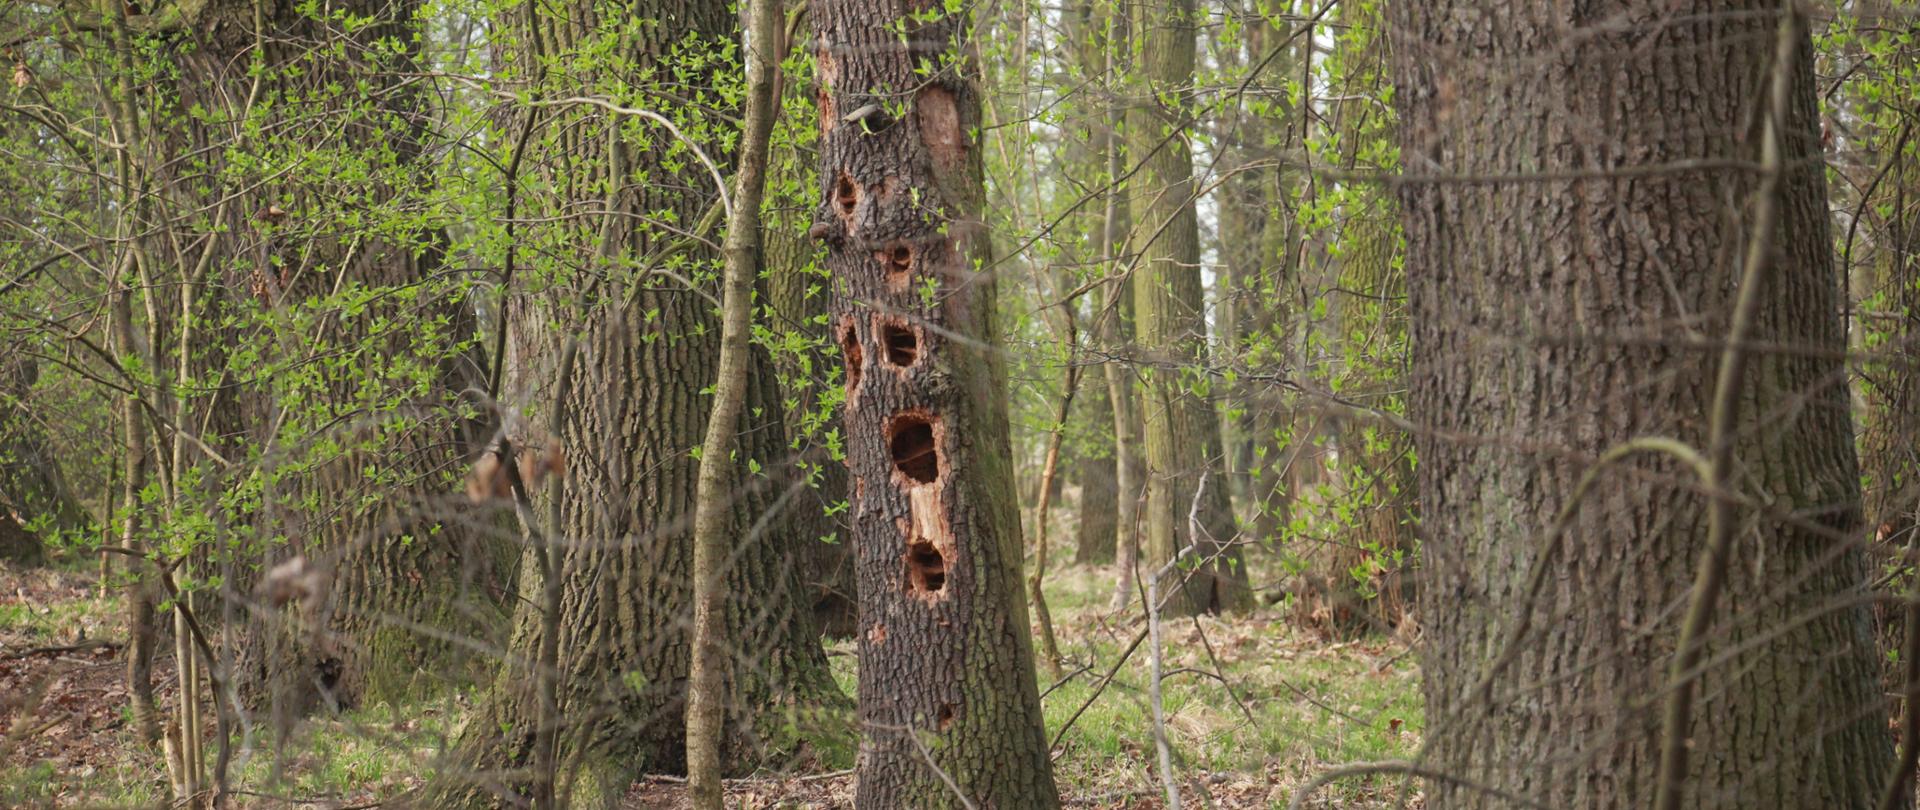 Zdjęcie przedstawia fragment rezerwatu - stary drzewostan, w jednym z drzew kilka dużych dziupli